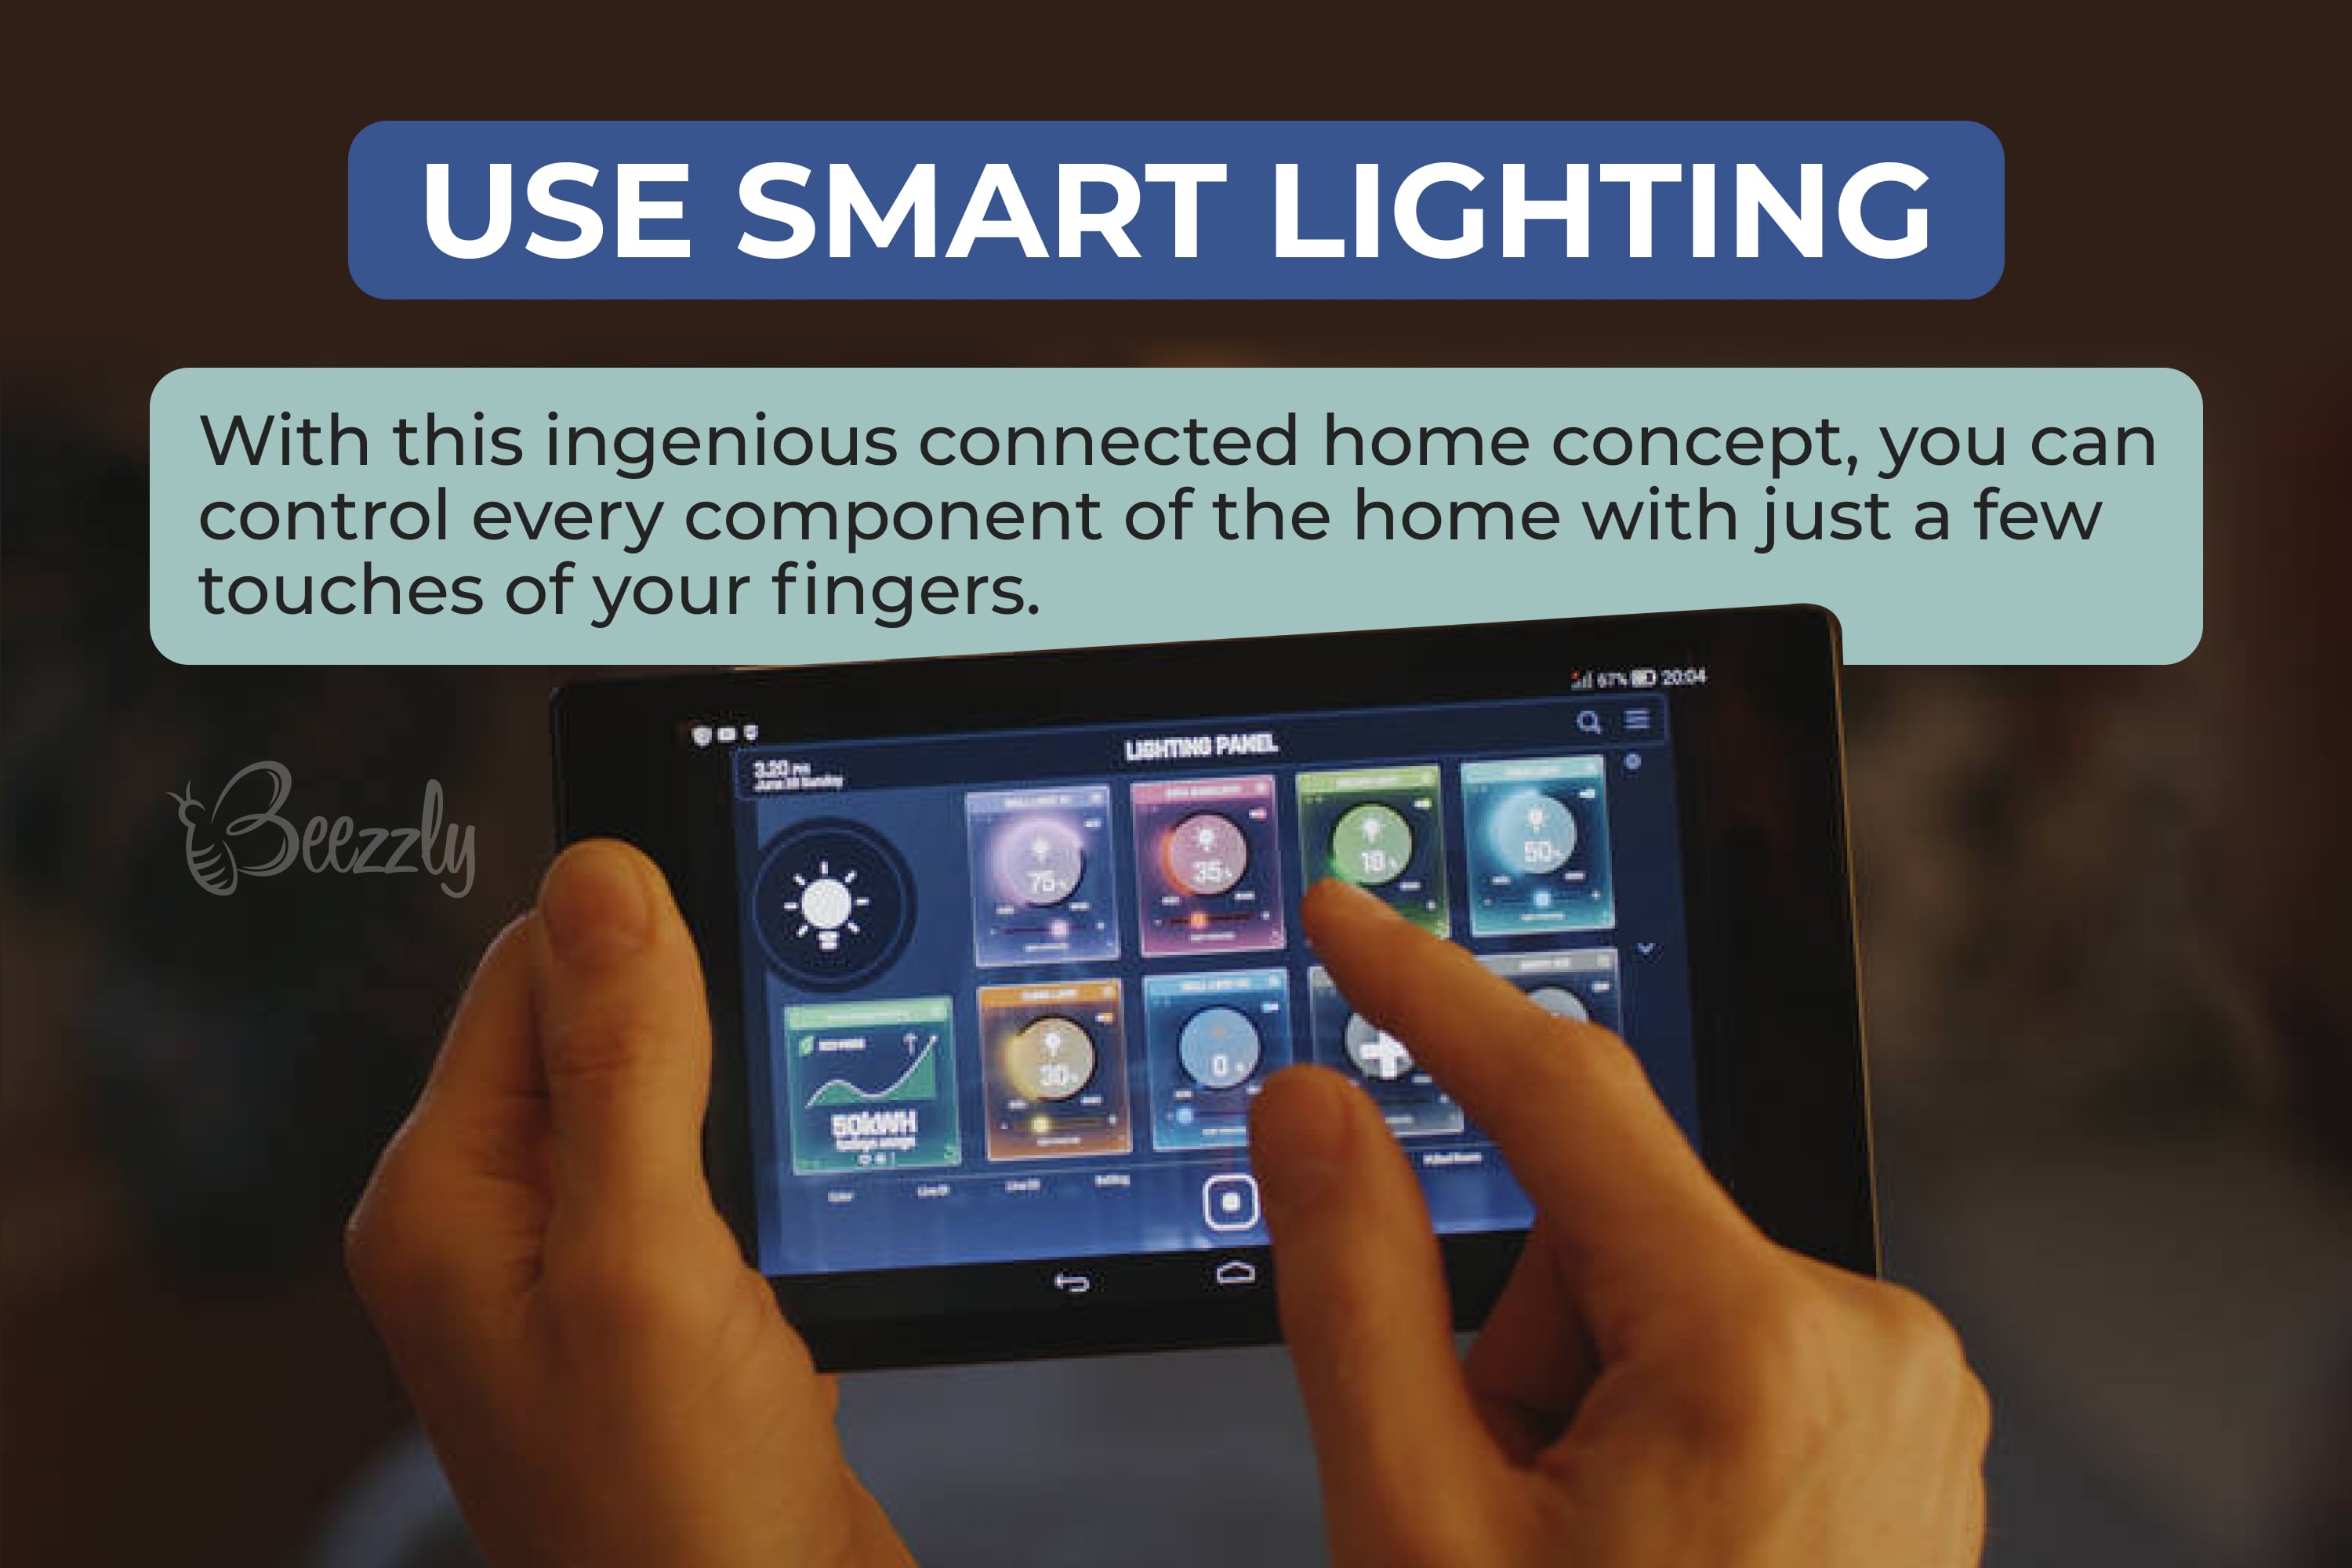 Use smart lighting